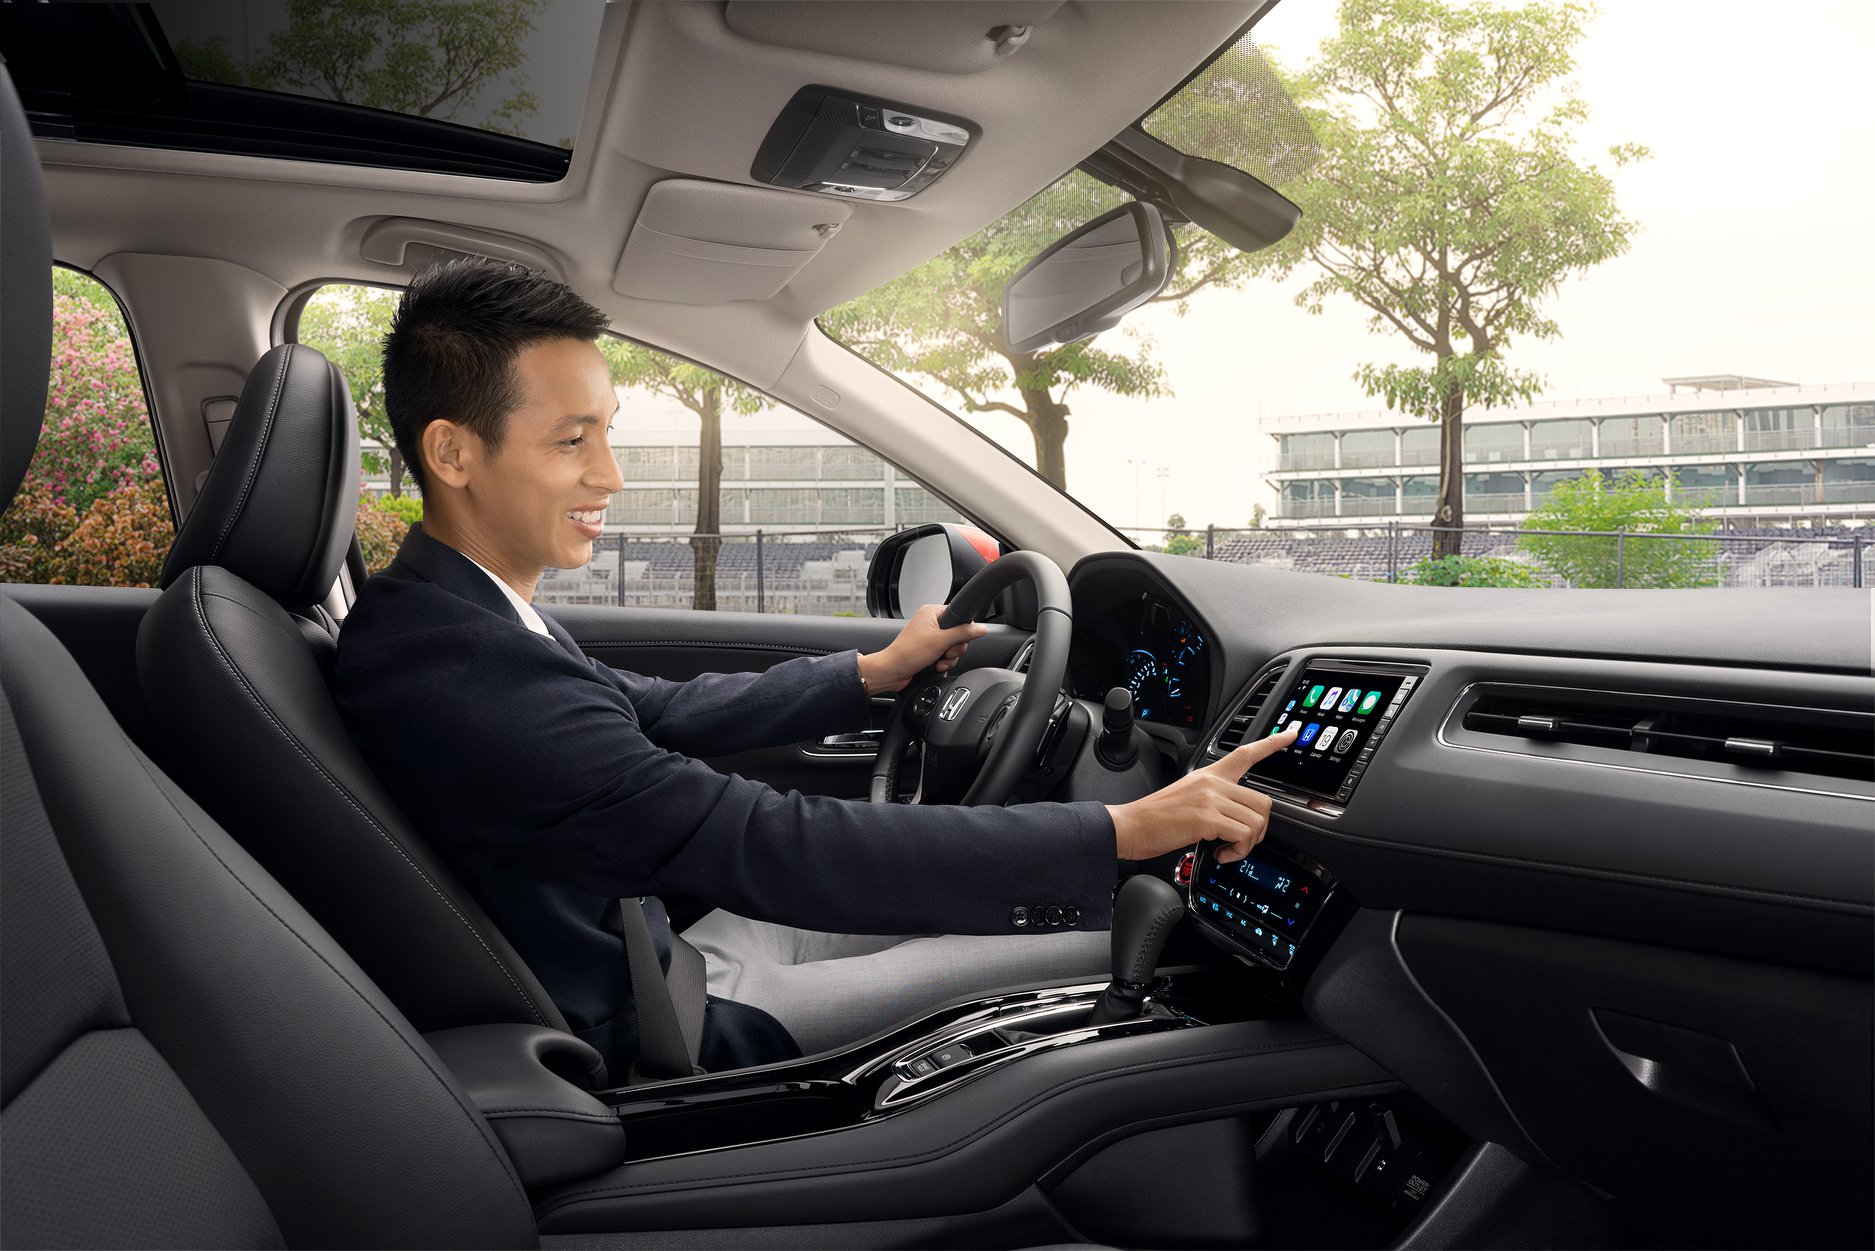 Honda HR-V New 2020 thay đổi màn hình, ưu đãi 50% phí trước bạ đến 31-12-2020. Liên hệ Đại lý Honda Ôtô Khánh Hòa - Nha Trang - Hotline 0905 254 255